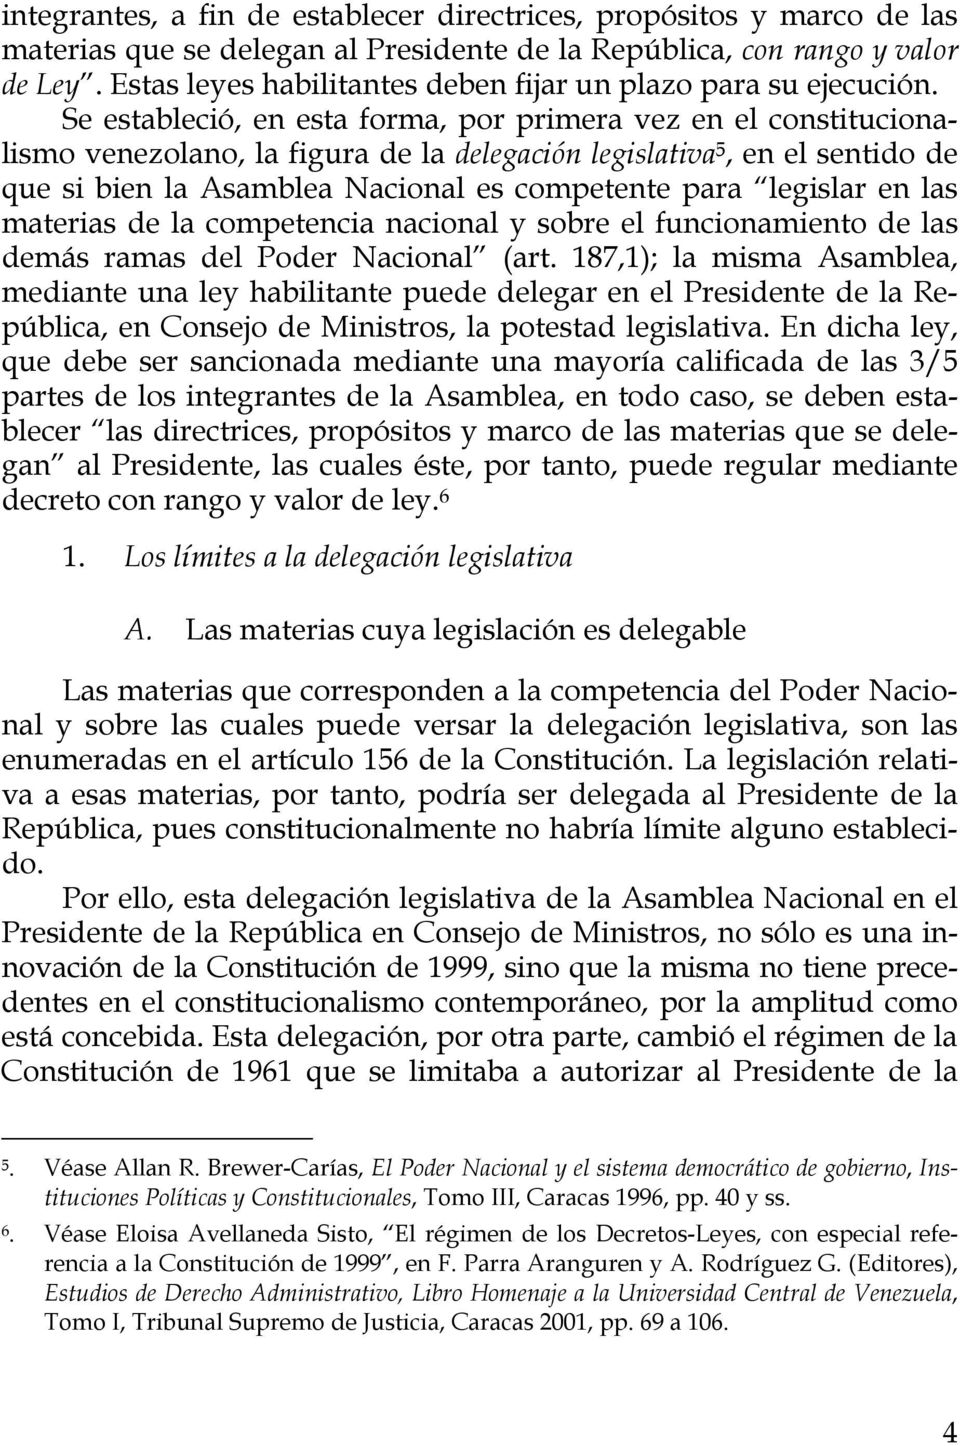 Se estableció, en esta forma, por primera vez en el constitucionalismo venezolano, la figura de la delegación legislativa 5, en el sentido de que si bien la Asamblea Nacional es competente para